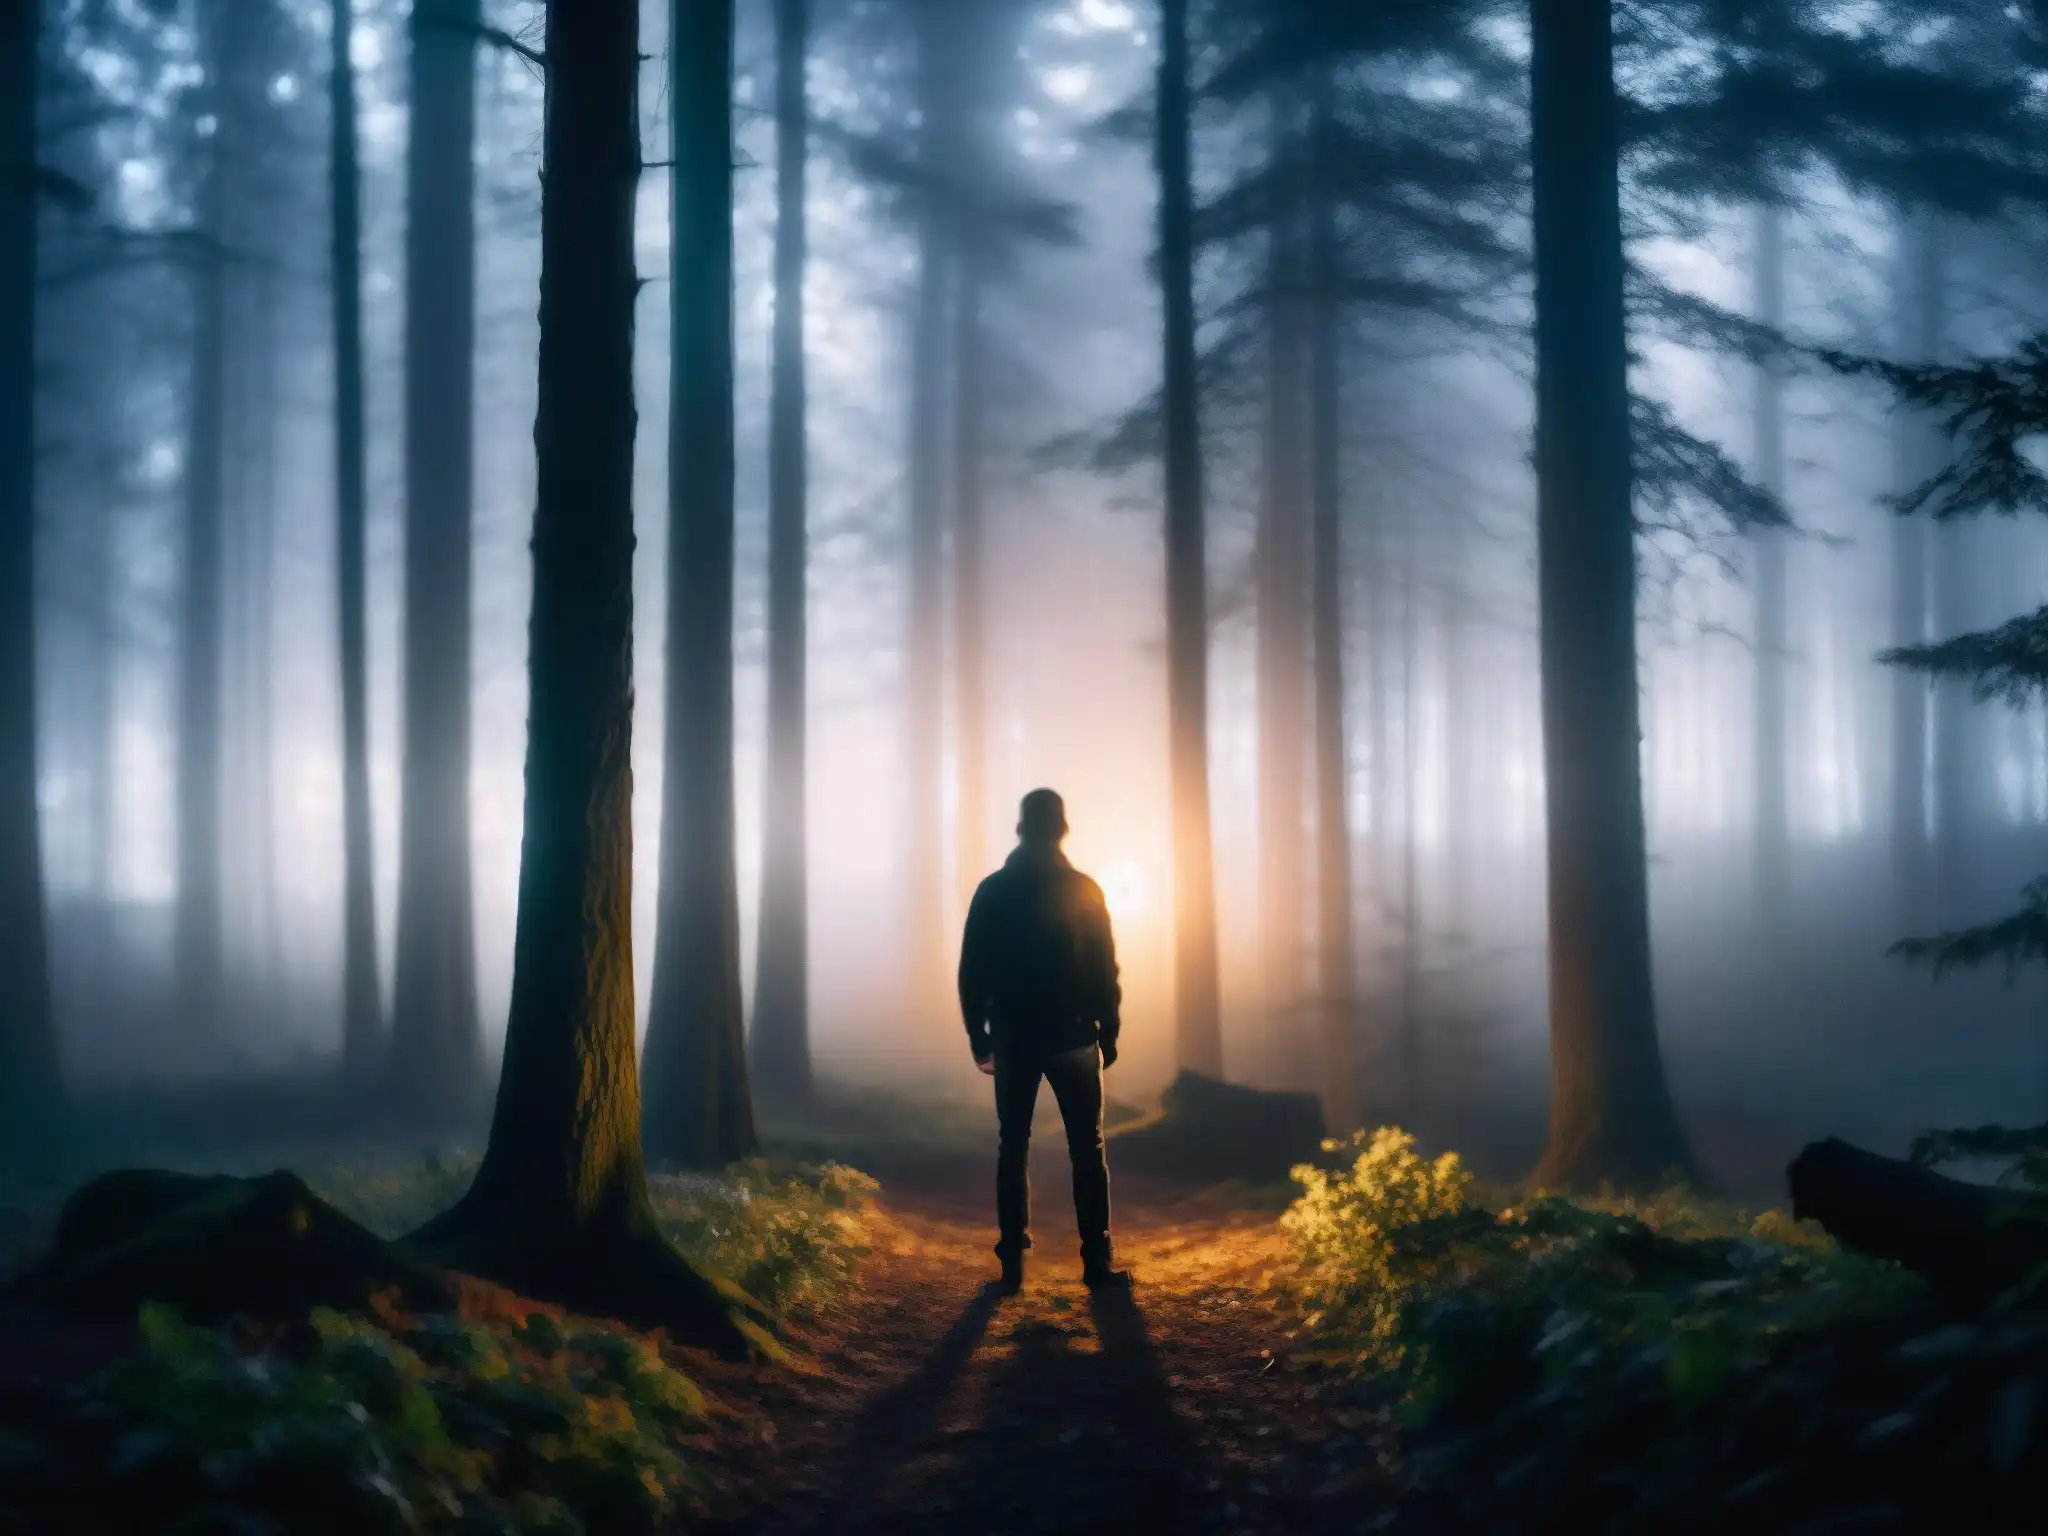 Figura solitaria iluminada por un smartphone en un bosque oscuro y brumoso de noche